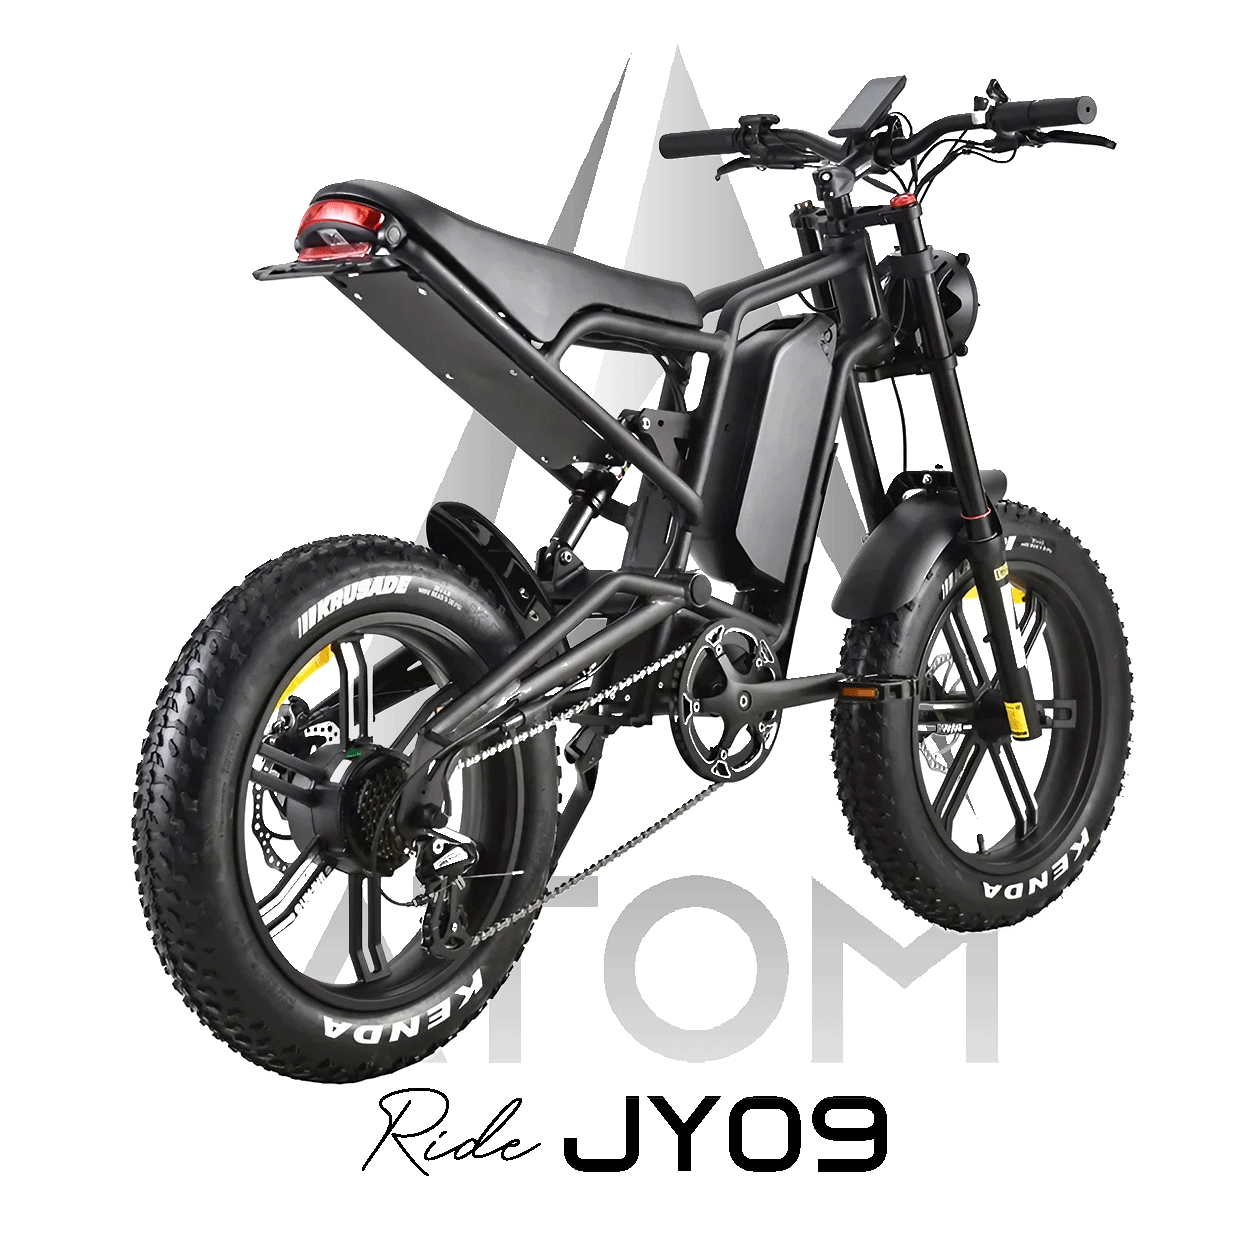 Vélo électrique Fatbike | Atom Ride JY09 | 500 W | V-max 25 km/h | Autonomie 105 km - Atom Motors